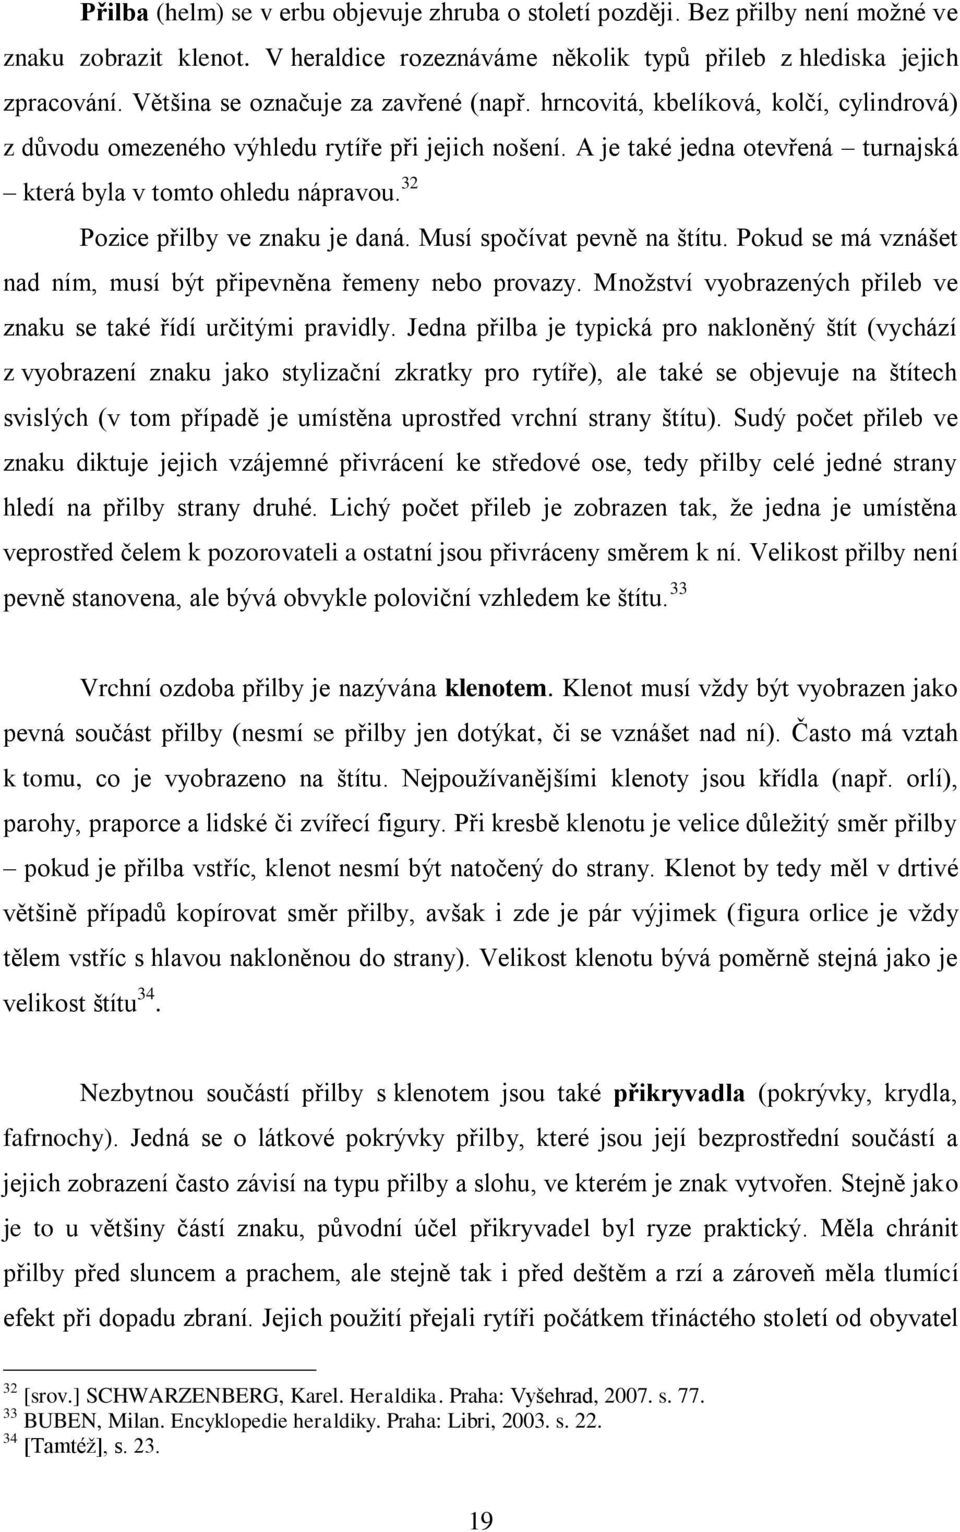 Pantheon of heraldic figures as a way to logotype - PDF Free Download